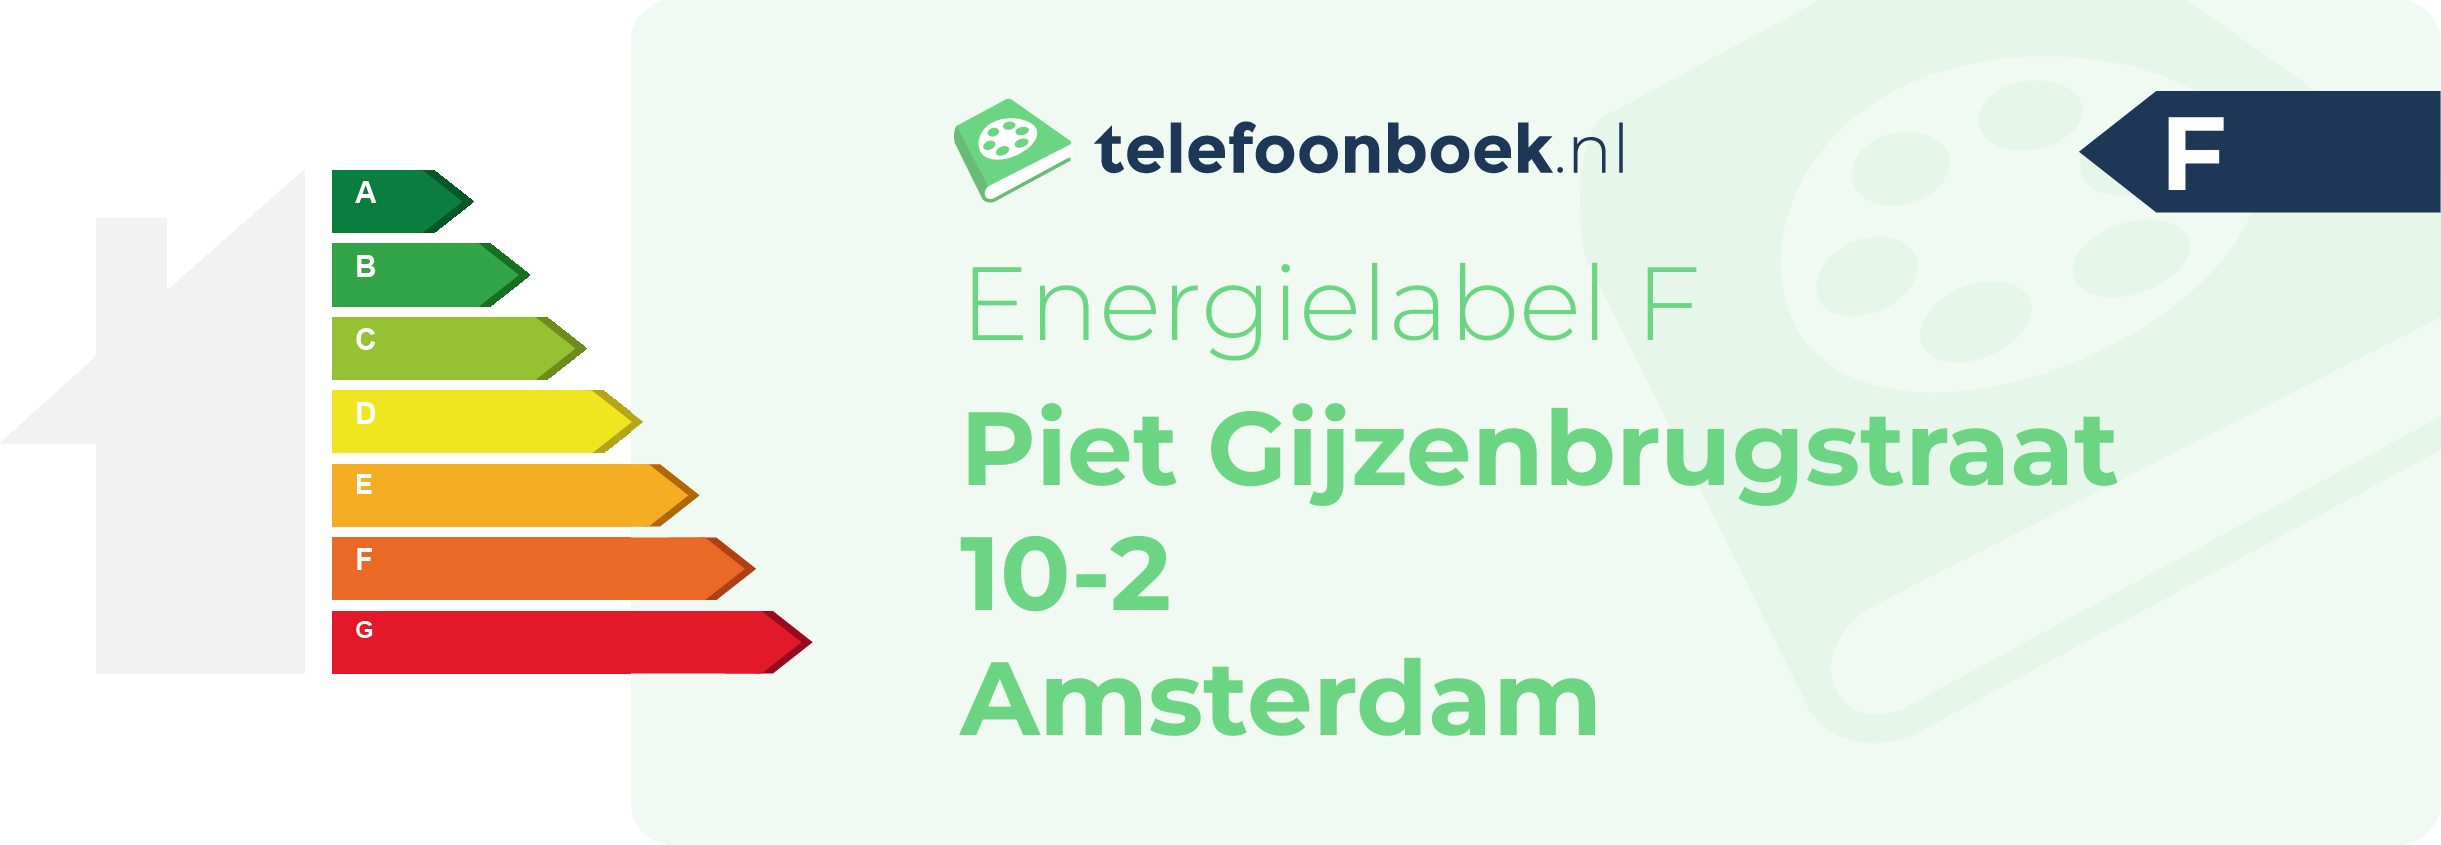 Energielabel Piet Gijzenbrugstraat 10-2 Amsterdam